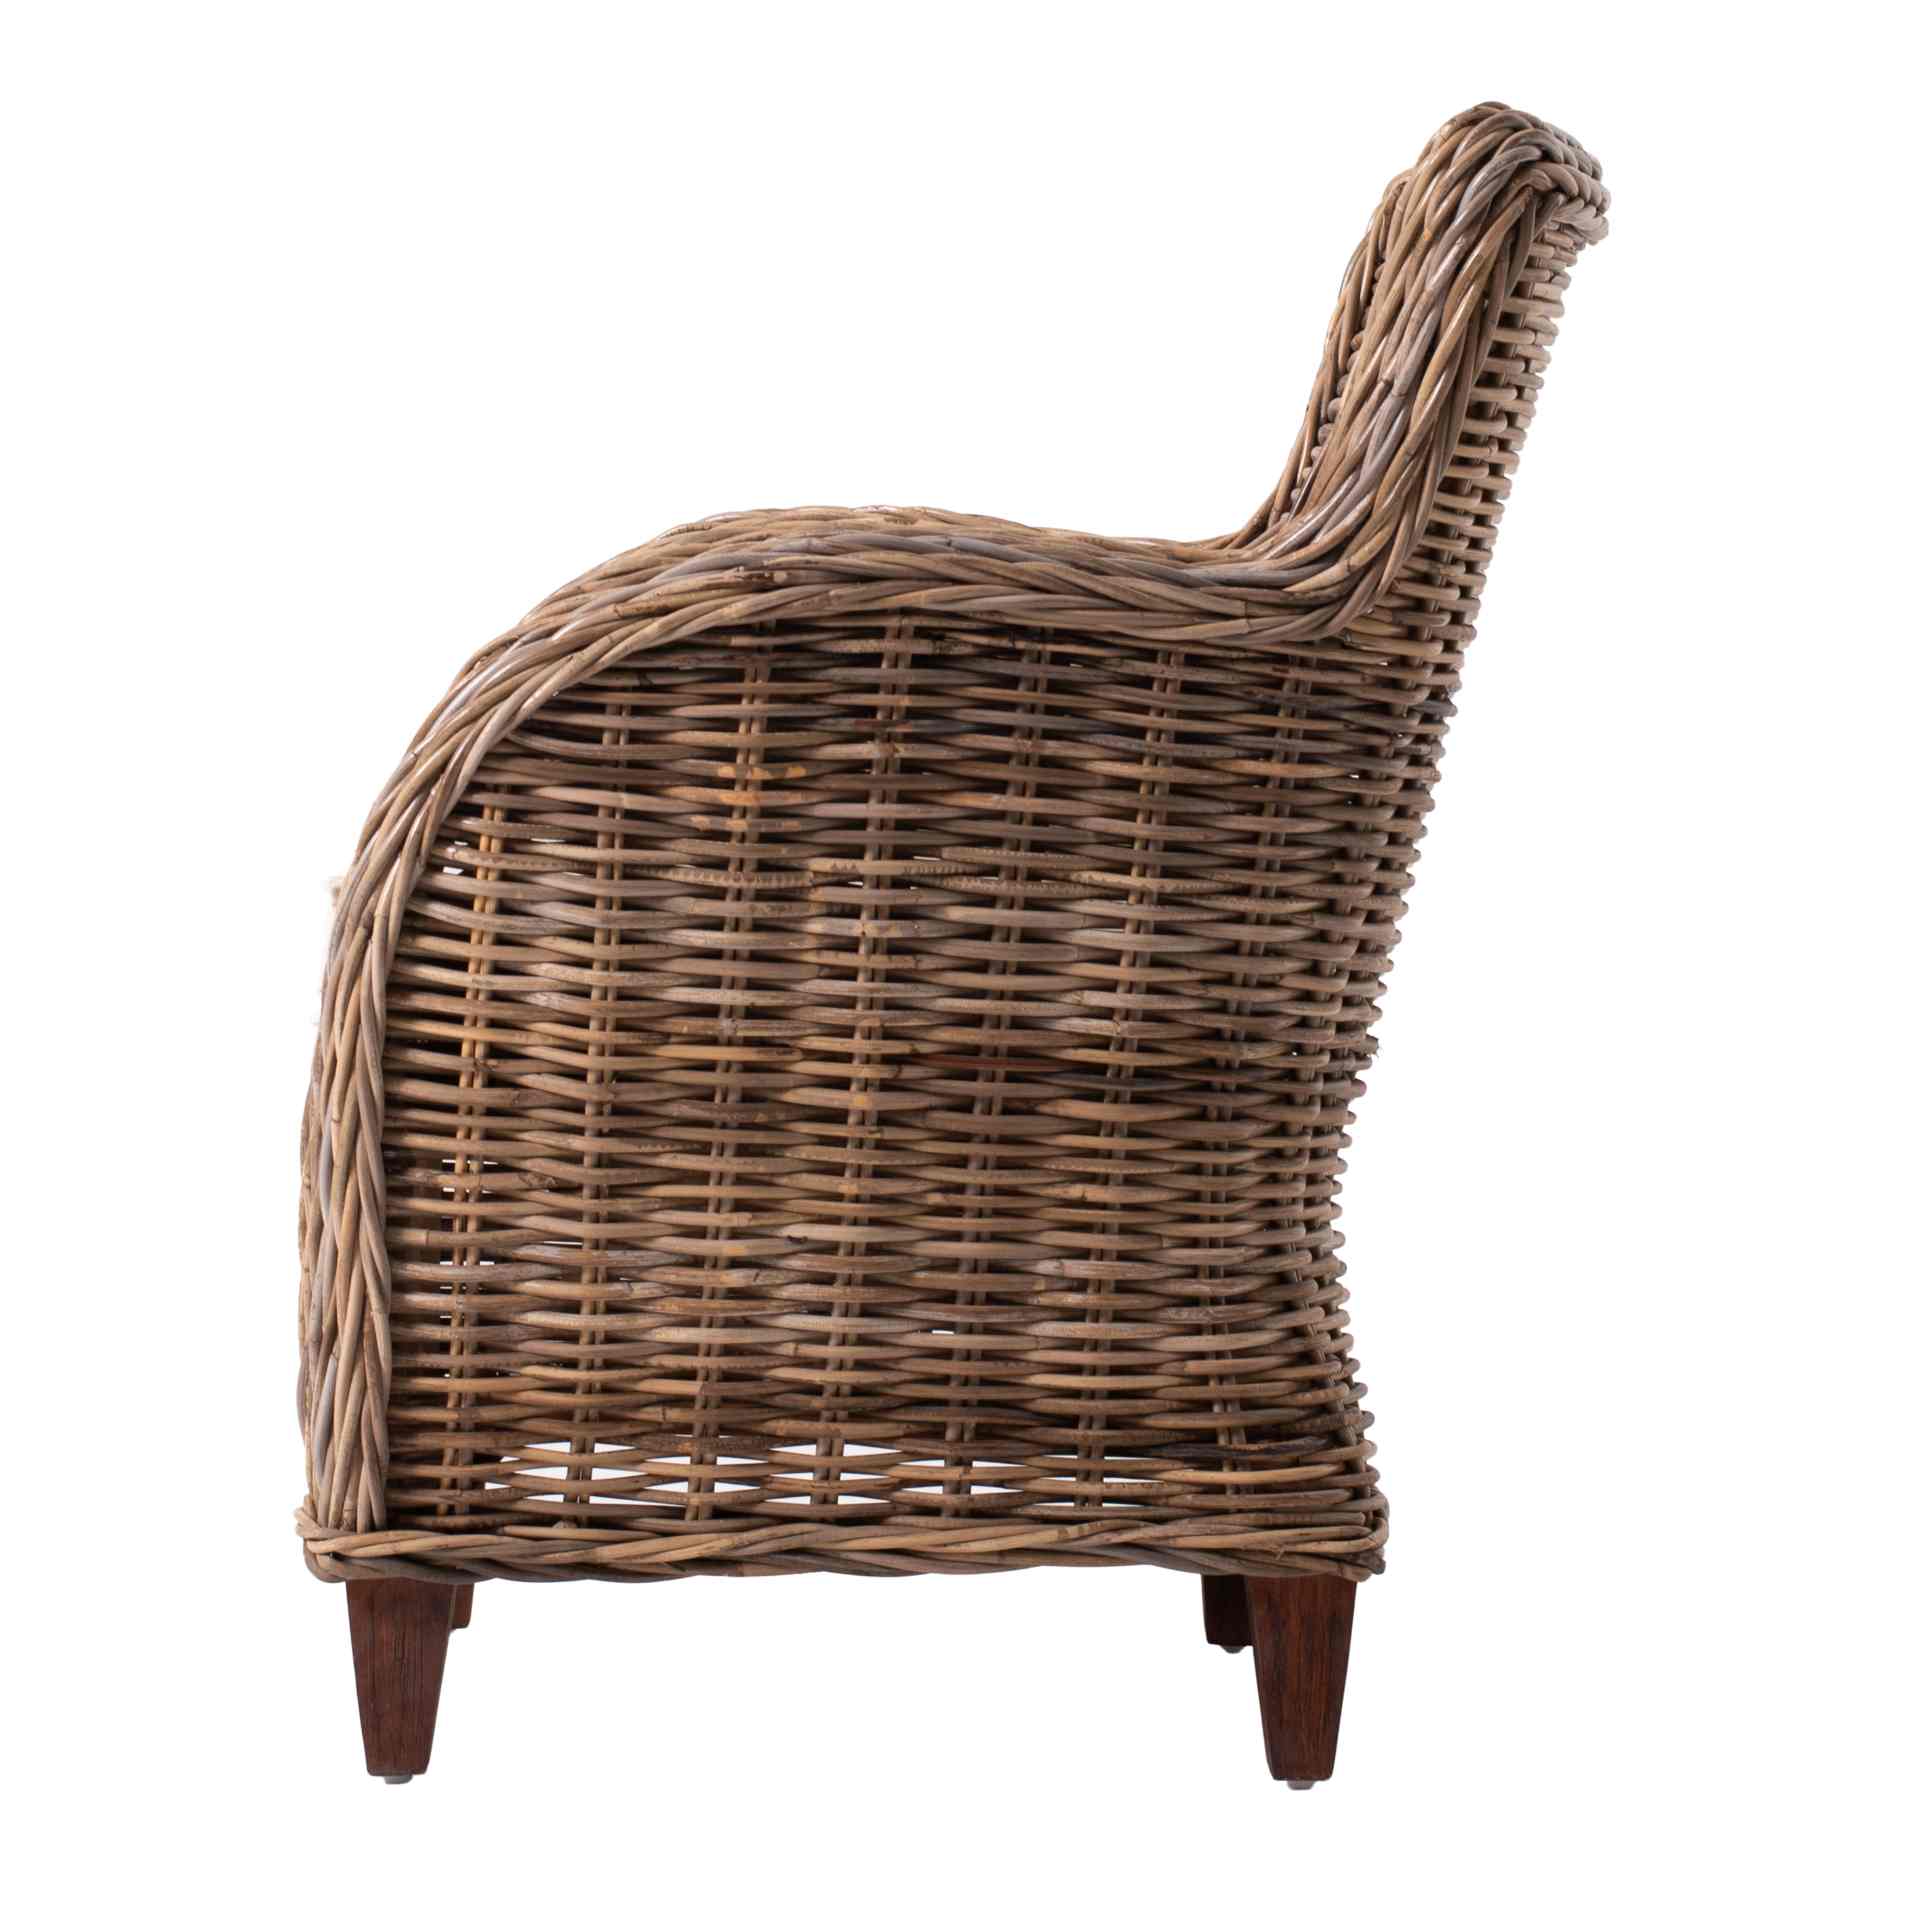 Der Armlehnstuhl Baron überzeugt mit seinem Landhaus Stil. Gefertigt wurde er aus Kabu Rattan, welches einen braunen Farbton besitzt. Der Stuhl verfügt über eine Armlehne und ist im 2er-Set erhältlich. Die Sitzhöhe beträgt beträgt 40 cm.